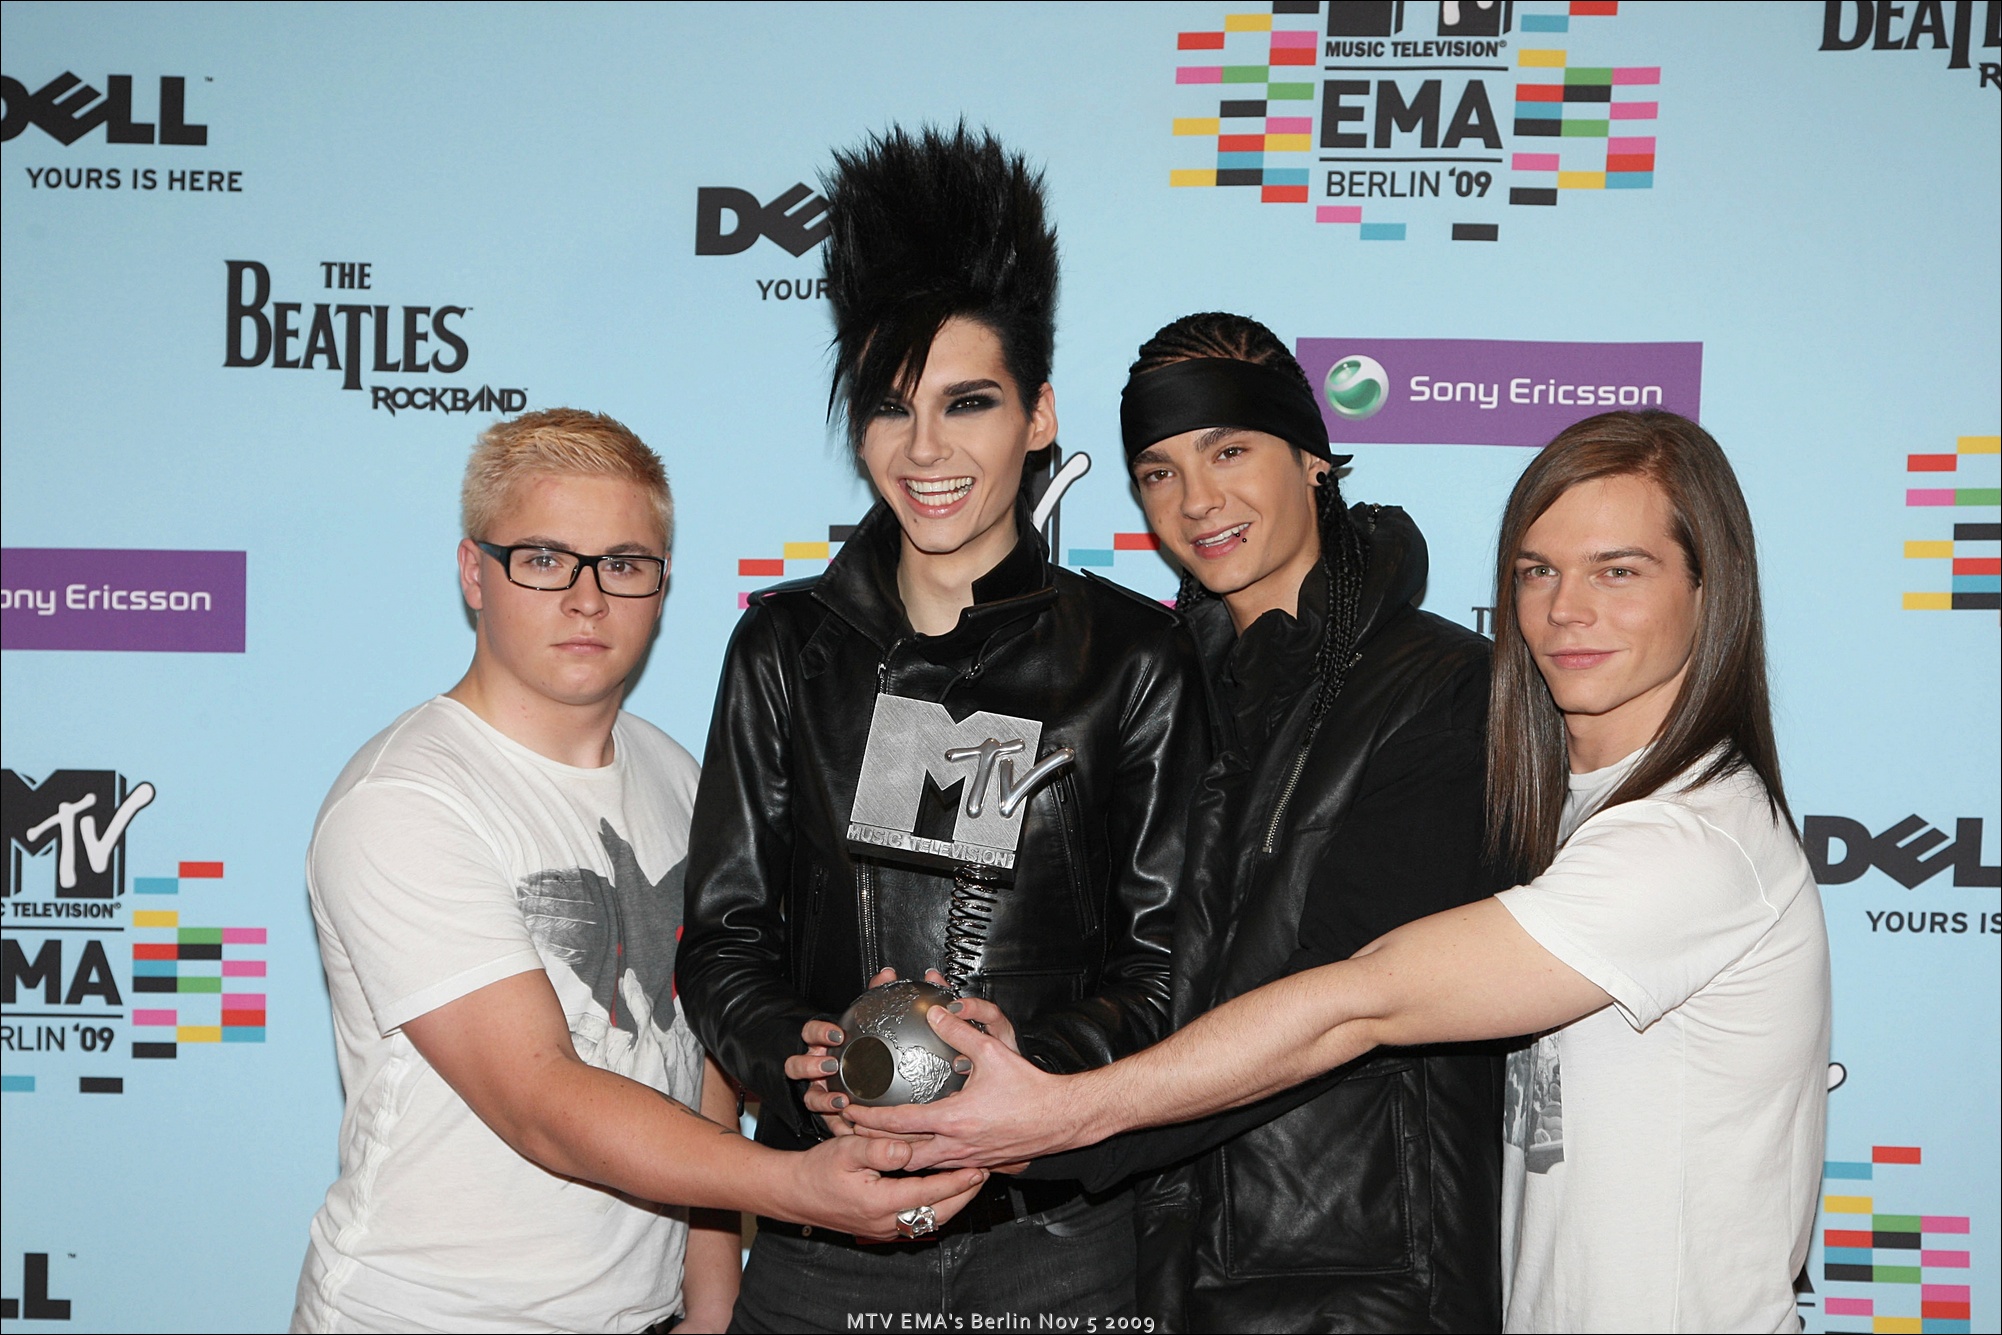 MTV EMA Berlin Nov 5 2009 86